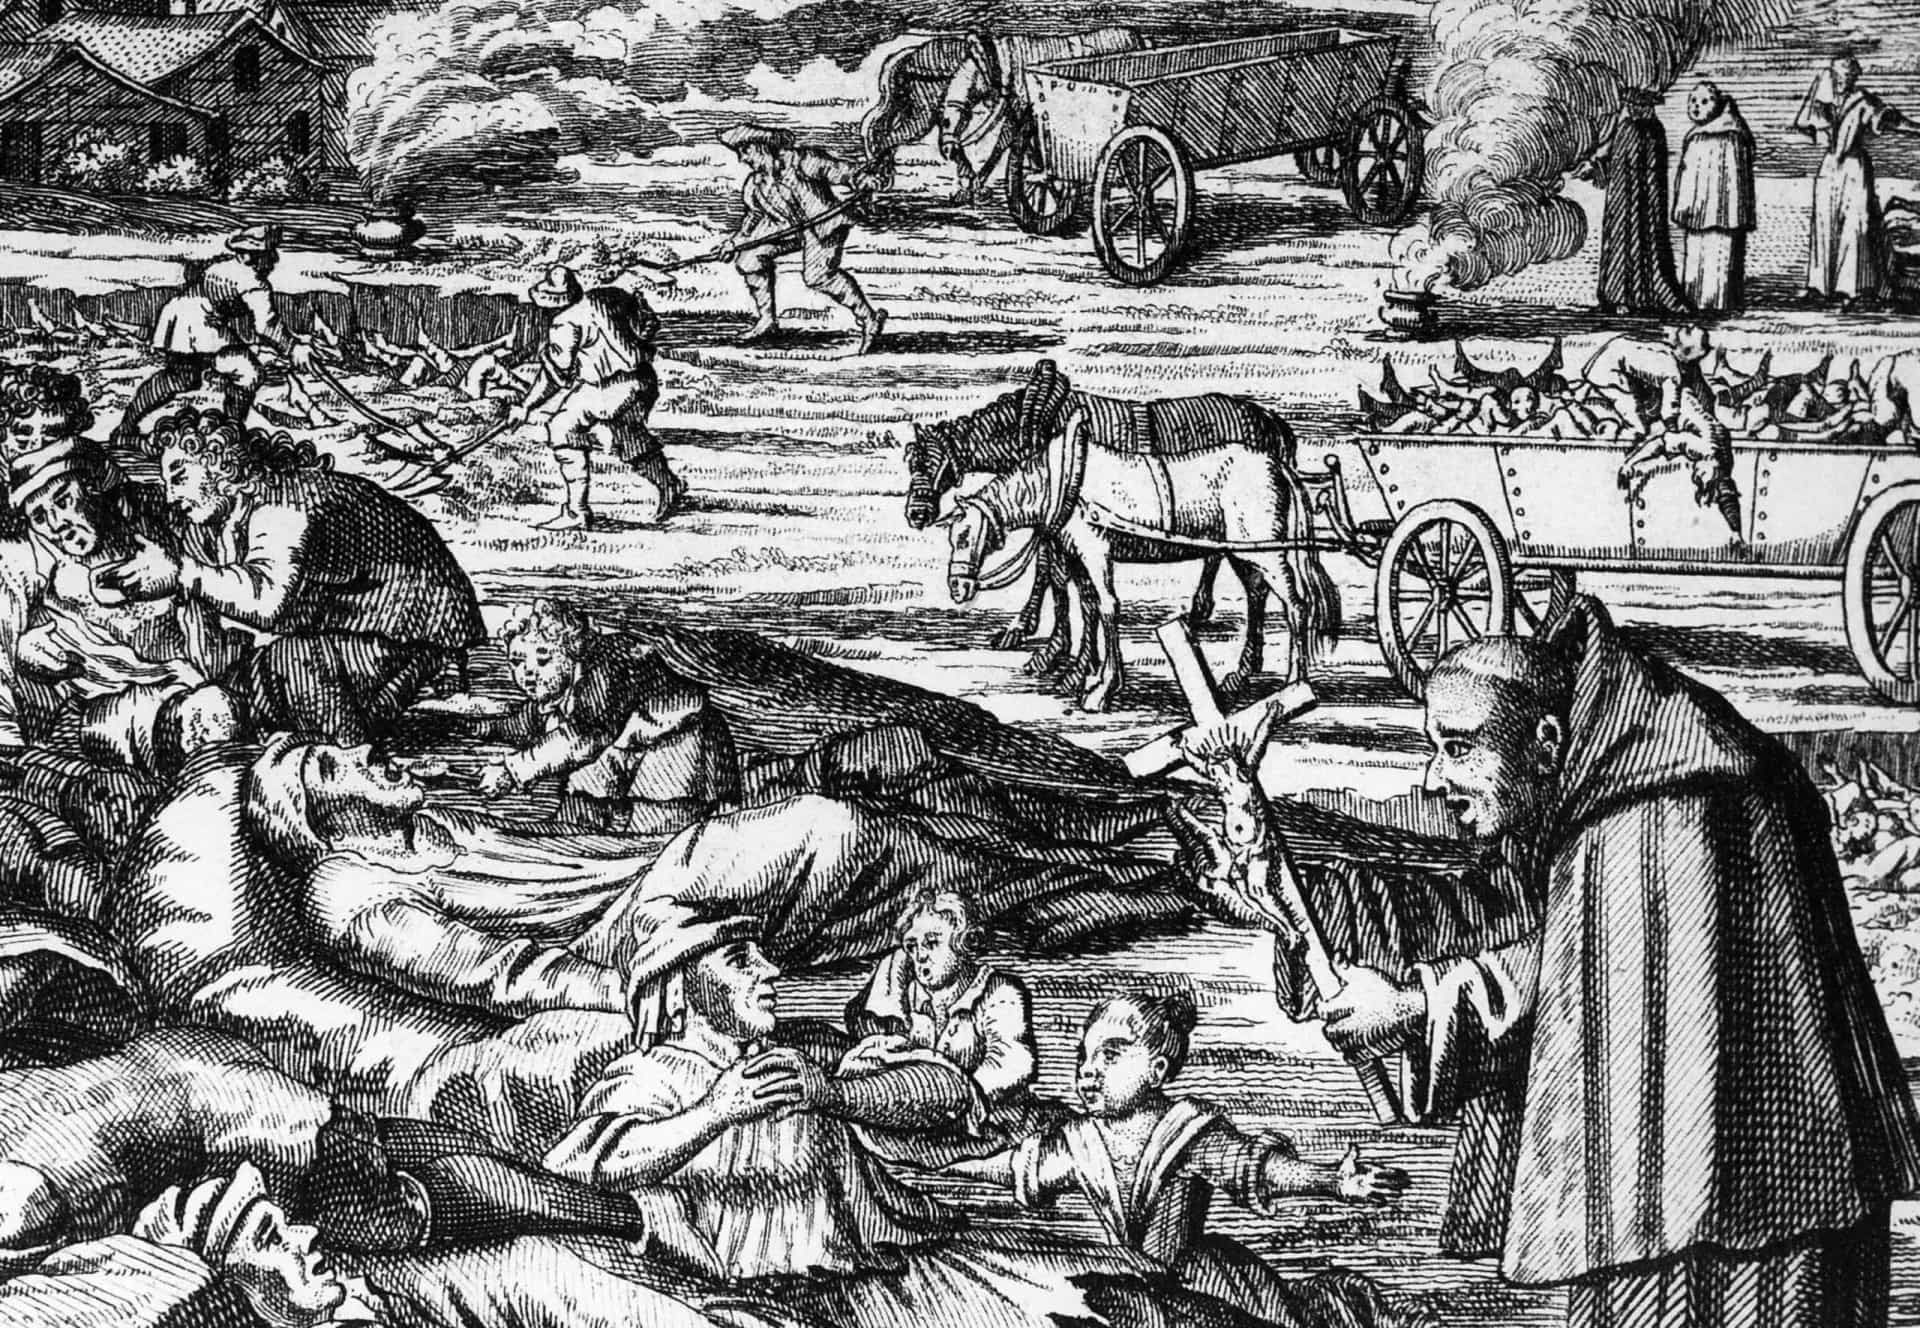 <p>Het was de schrik van de Middeleeuwen: de Zwarte Dood. Een besmetting betekende niet alleen een afgrijselijke lijdensweg, maar ook een doodvonnis. De verwoestende builenpest trof Europa en Azië in het midden van de jaren 1300. Naar schatting heeft de pandemie zo'n 200 miljoen levens geëist. Waar kwam deze verderfelijke pest vandaan, hoe werd het overgedragen en wat maakte het zo gruwelijk?<br><br>Klik verder en ontdek meer over deze genadeloze middeleeuwse moordenaar.</p>